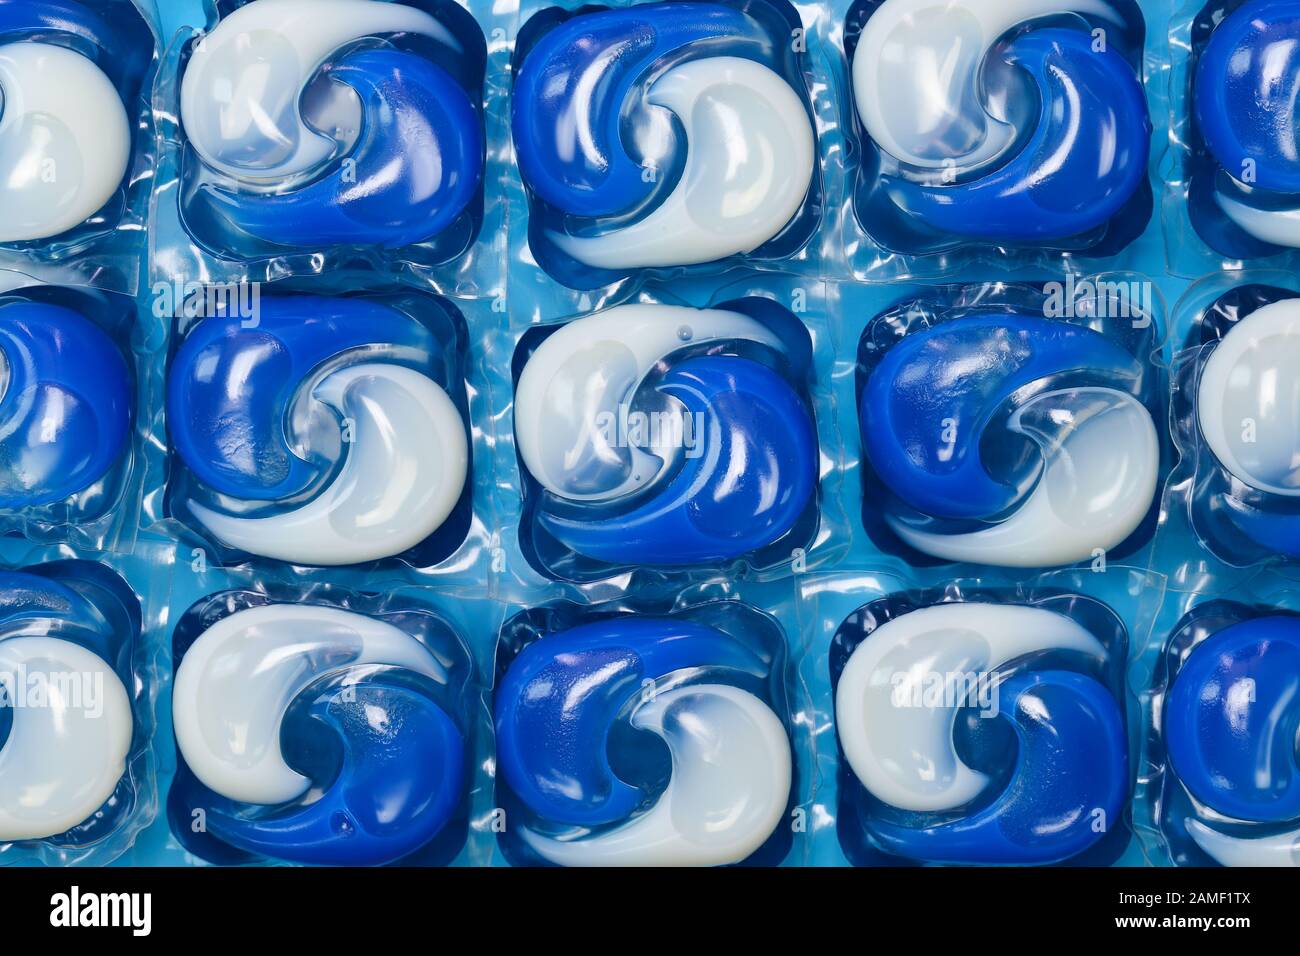 Gros plan sur les capsules/dosettes de lessive liquide pour lave-linge bleu  et blanc isolées sur un fond bleu Photo Stock - Alamy